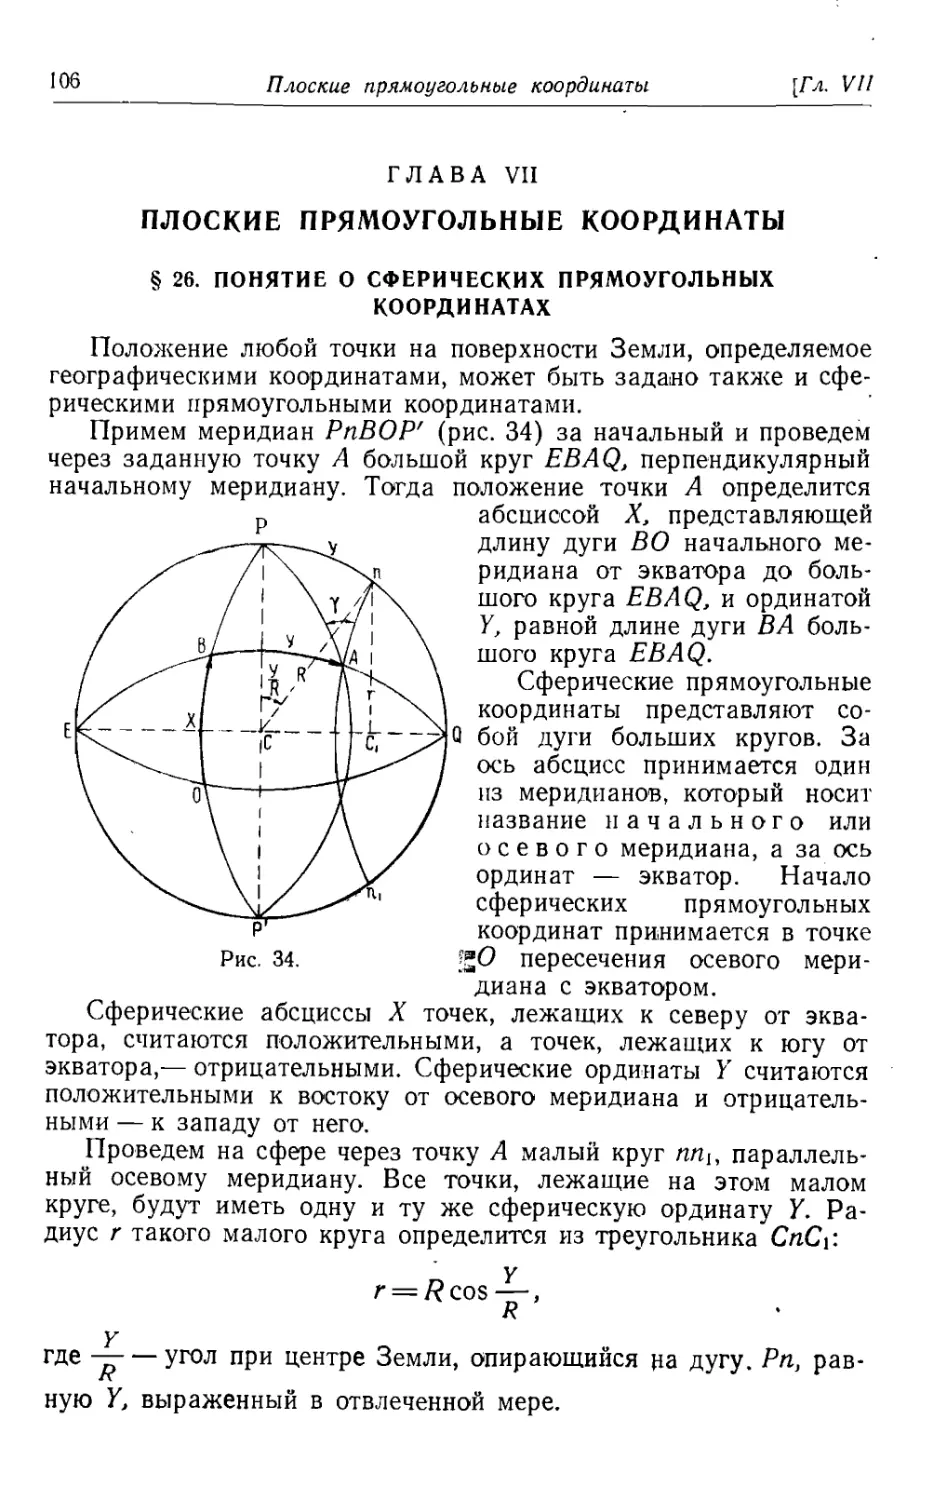 Глава 7. Плоские прямоугольные координаты
26. Понятие о сферических прямоугольных координатах